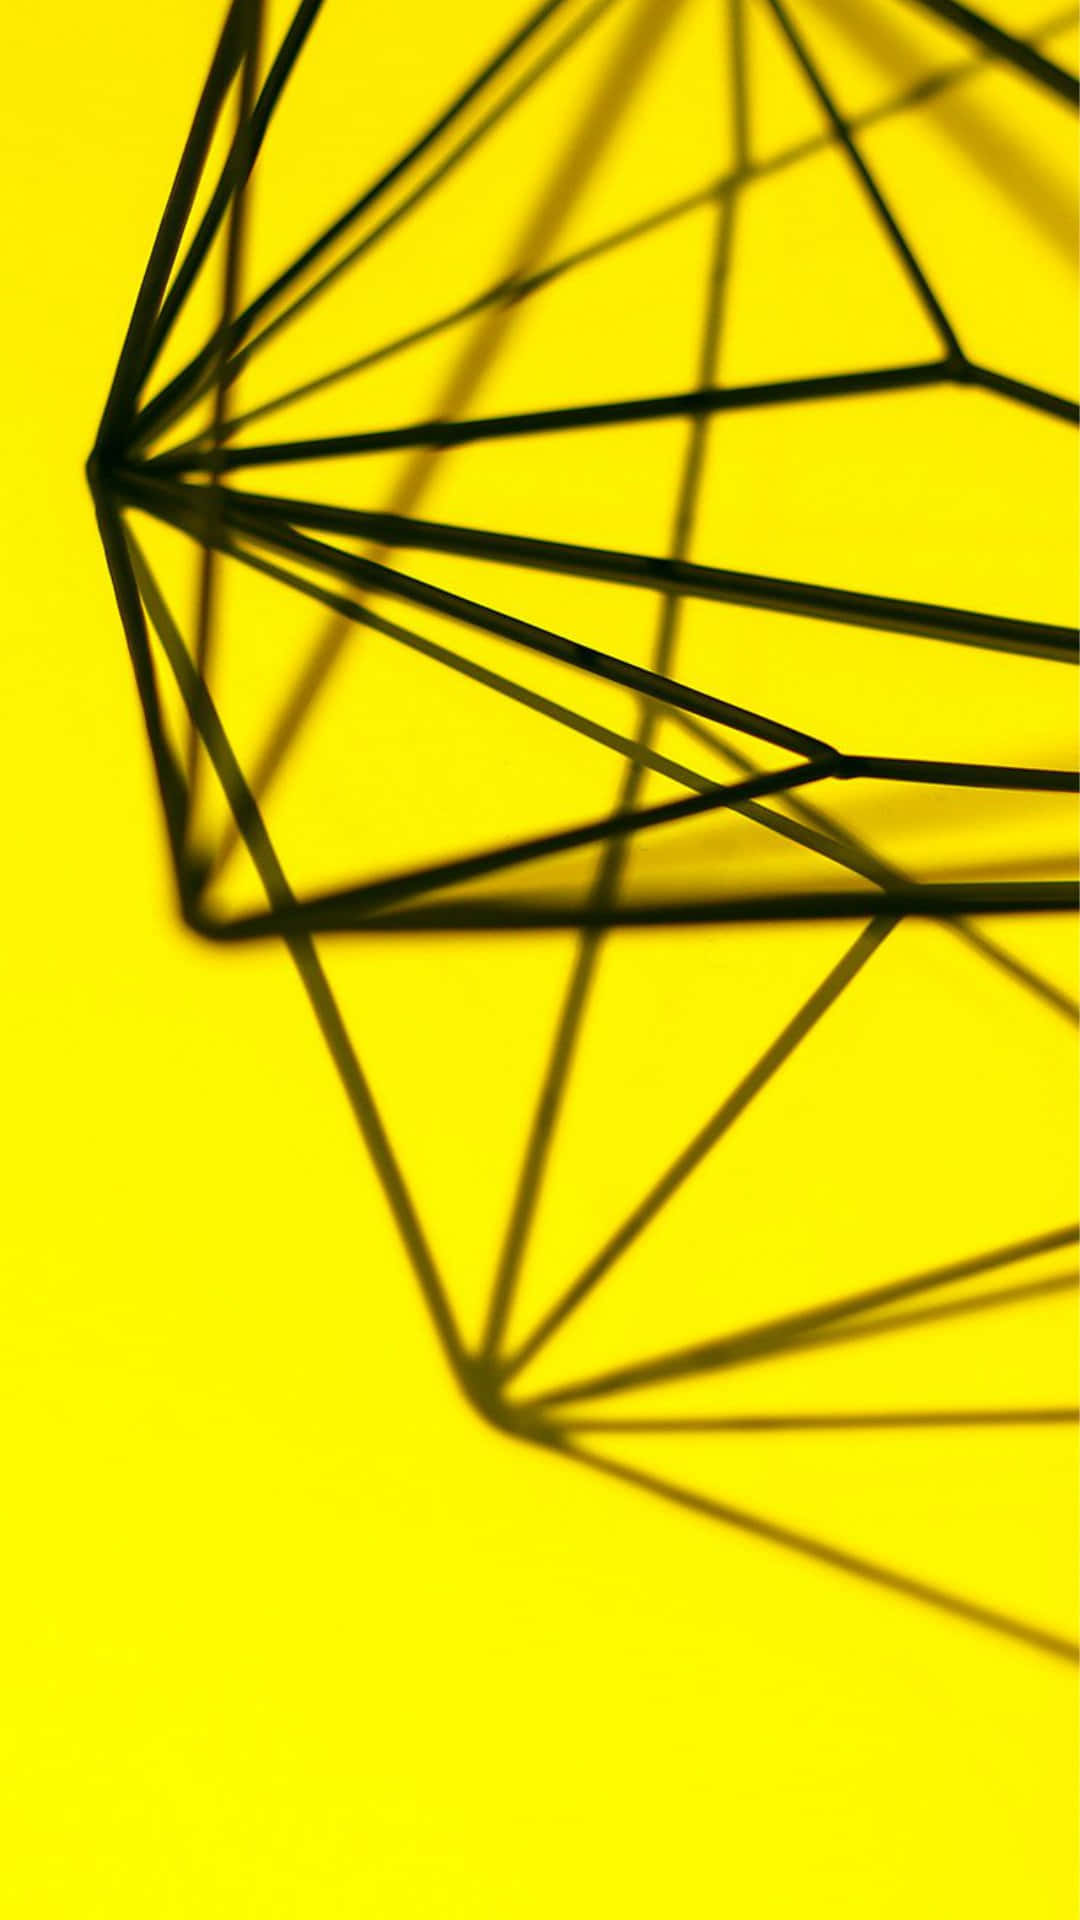 Umaforma Geométrica Preta E Amarela Em Um Fundo Amarelo